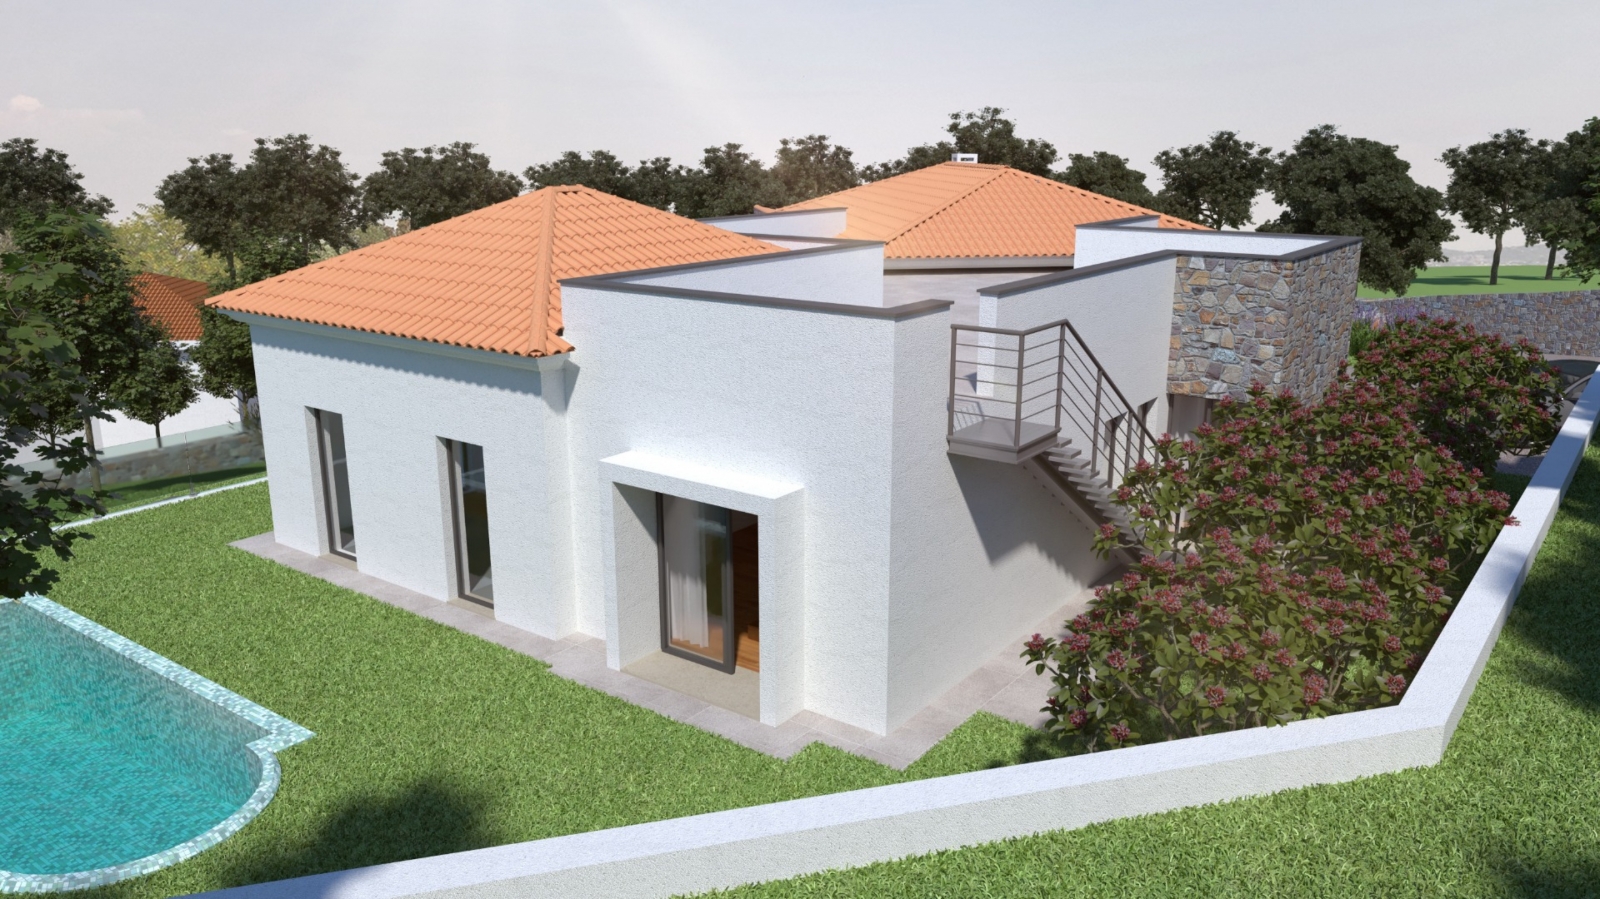 Terreno para construção de moradia T3, para venda, em Silves, Algarve_200010